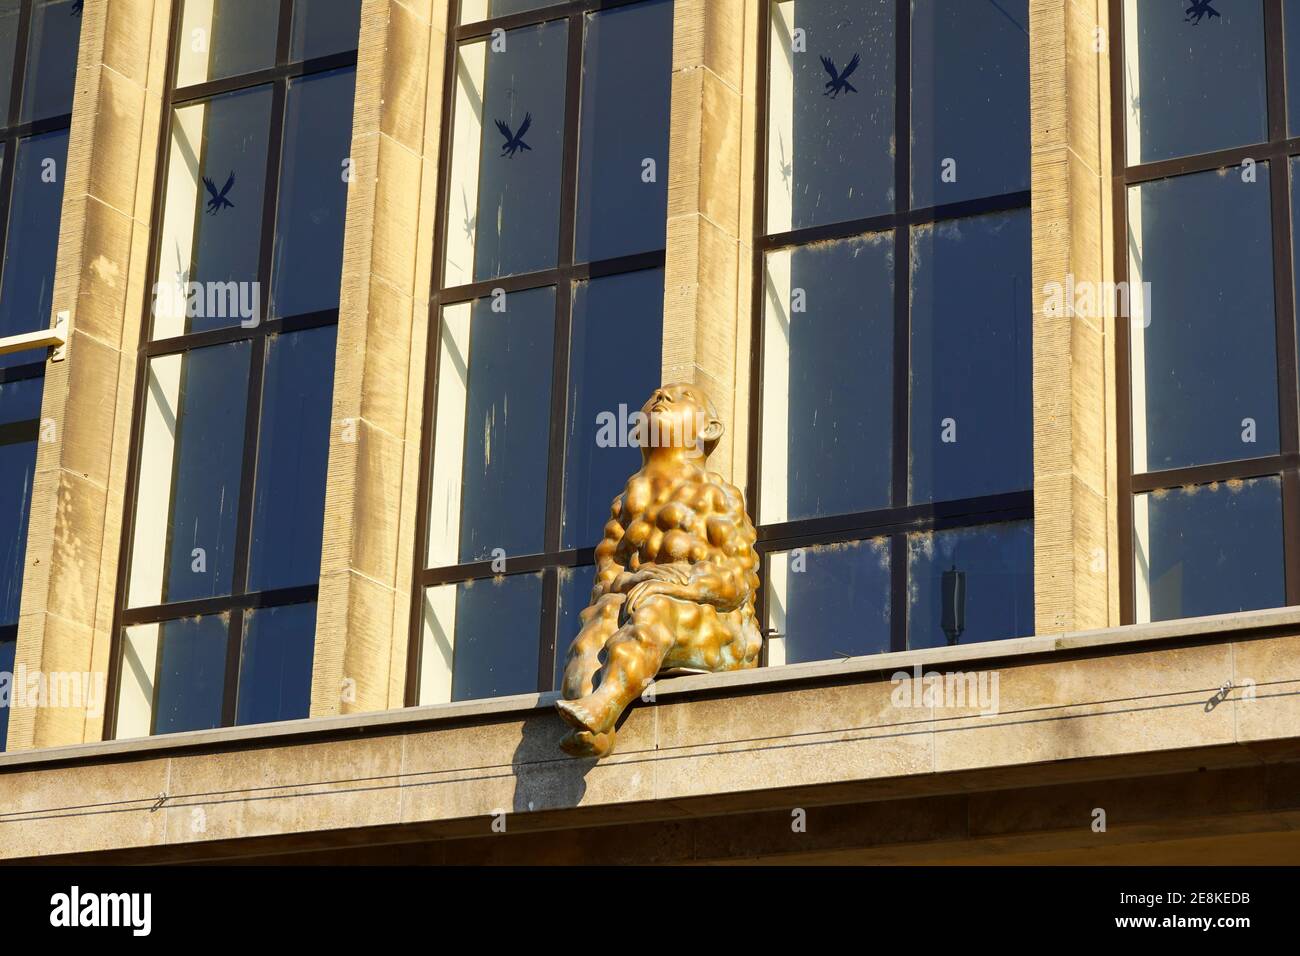 La scultura in bronzo "Beulenmann" (uomo a becco), seduta di fronte a una finestra dell'edificio principale della stazione di Düsseldorf. Opera di Paloma Varga Weisz. Foto Stock